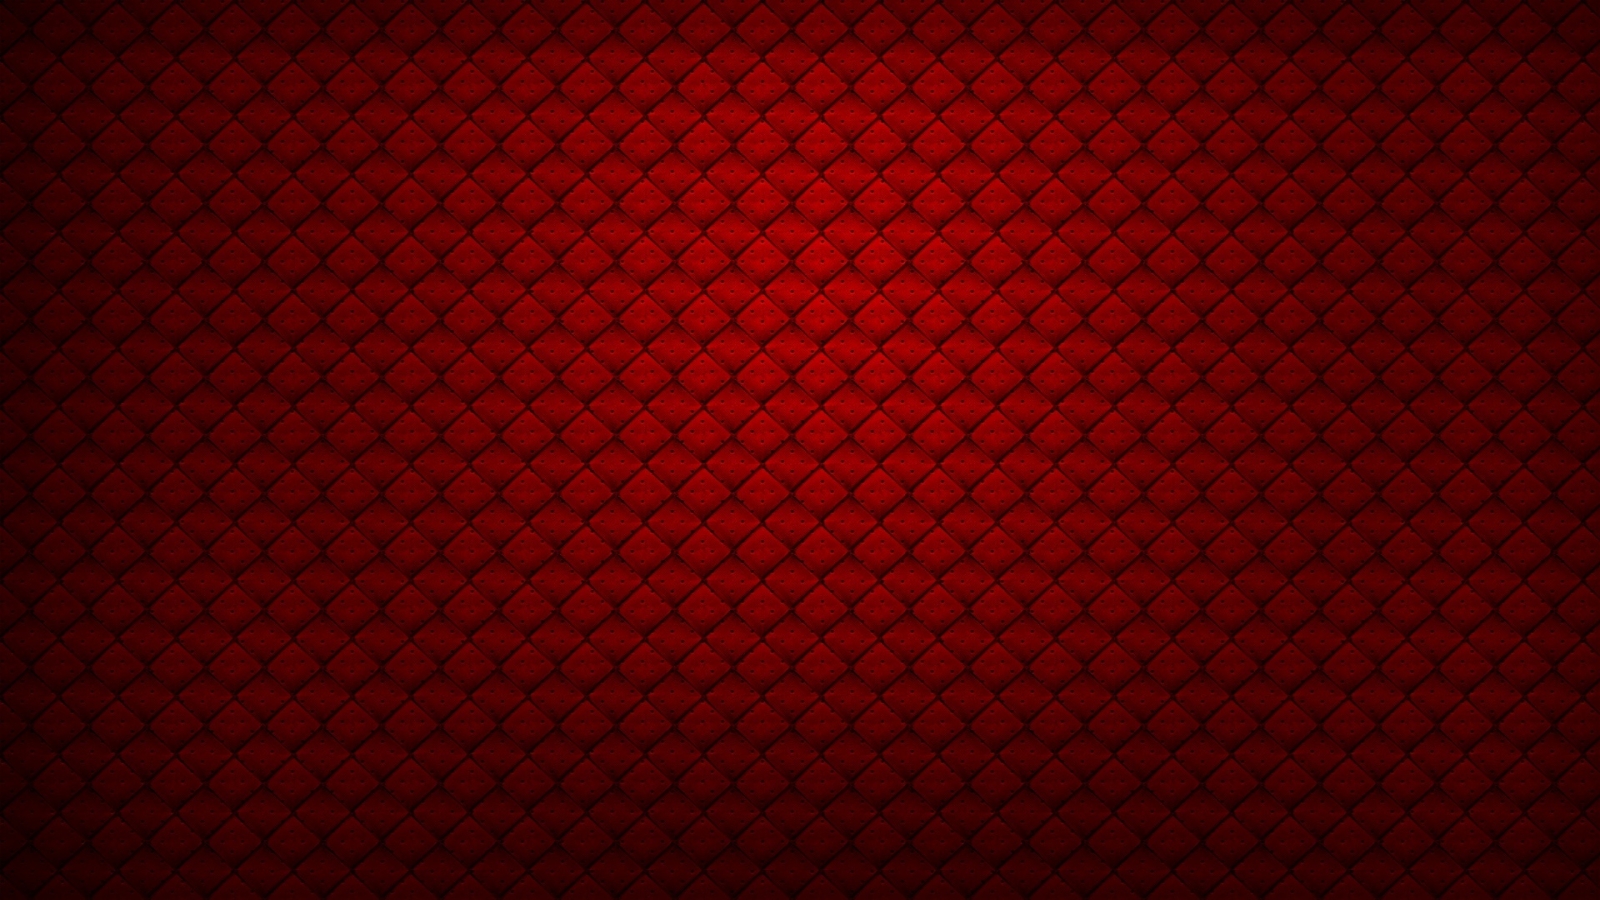 Still In Red X HDtv Wallpaper